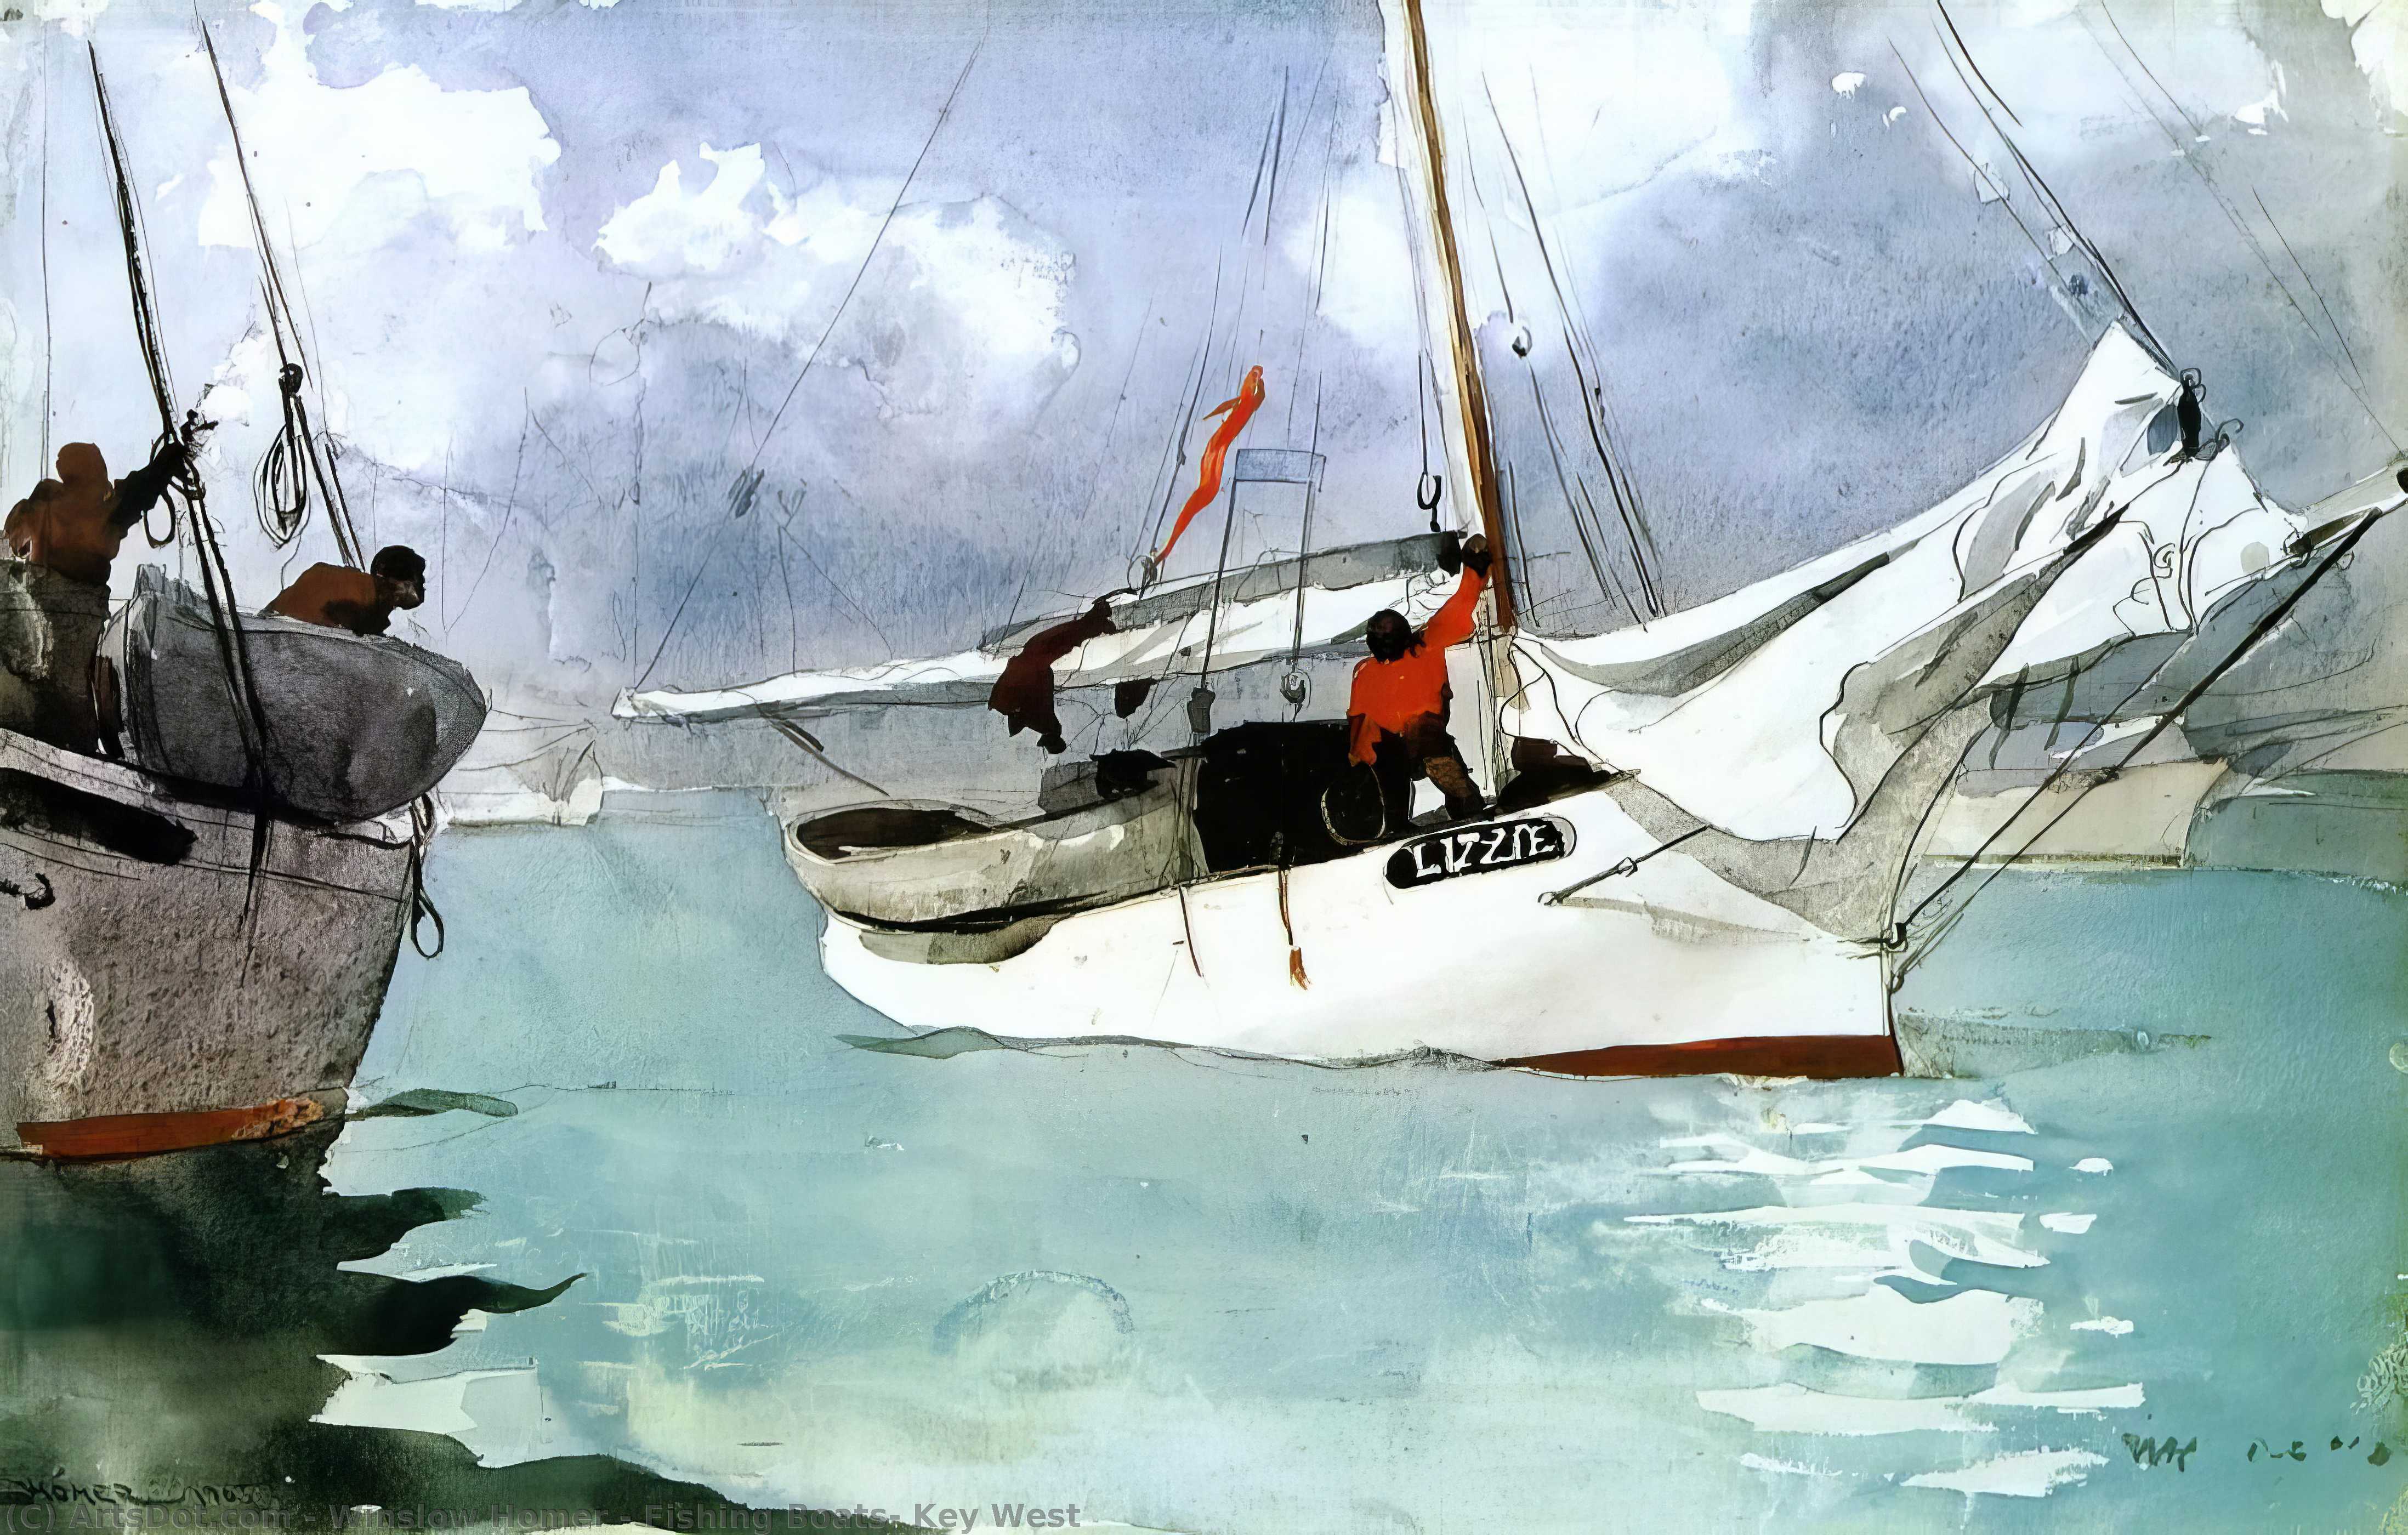 Acheter Reproductions D'art De Musée Bateaux de pêche, Key West, 1903 de Winslow Homer (1836-1910, United States) | ArtsDot.com